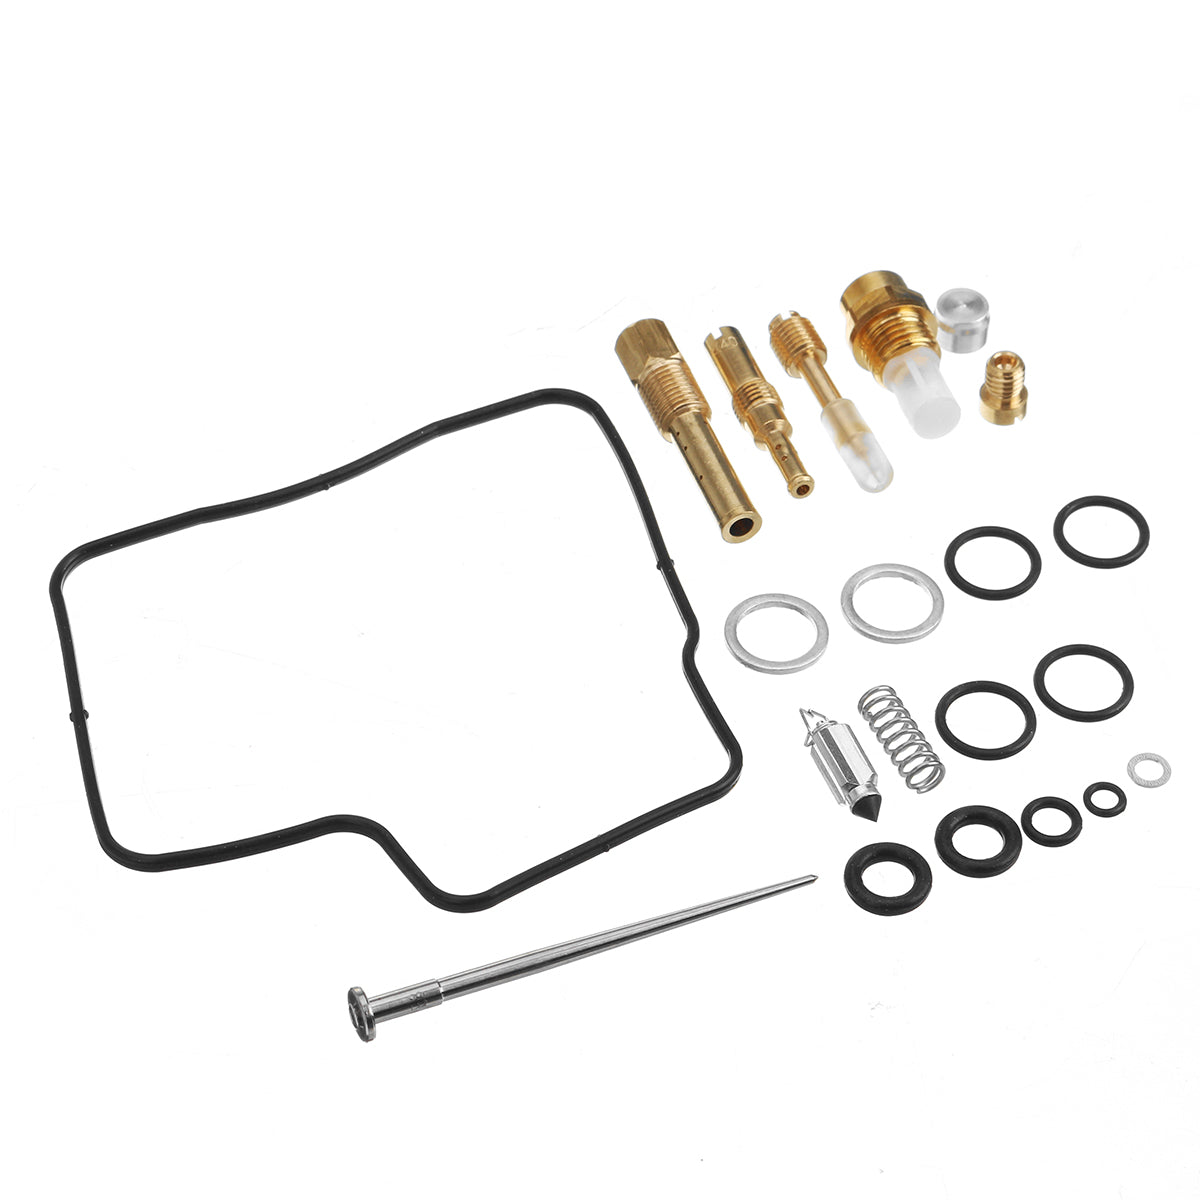 Carburetor Rebuild Kit Set fit for Honda VT700 VT750 VT1100 Carb Repair 18-5101 - Auto GoShop